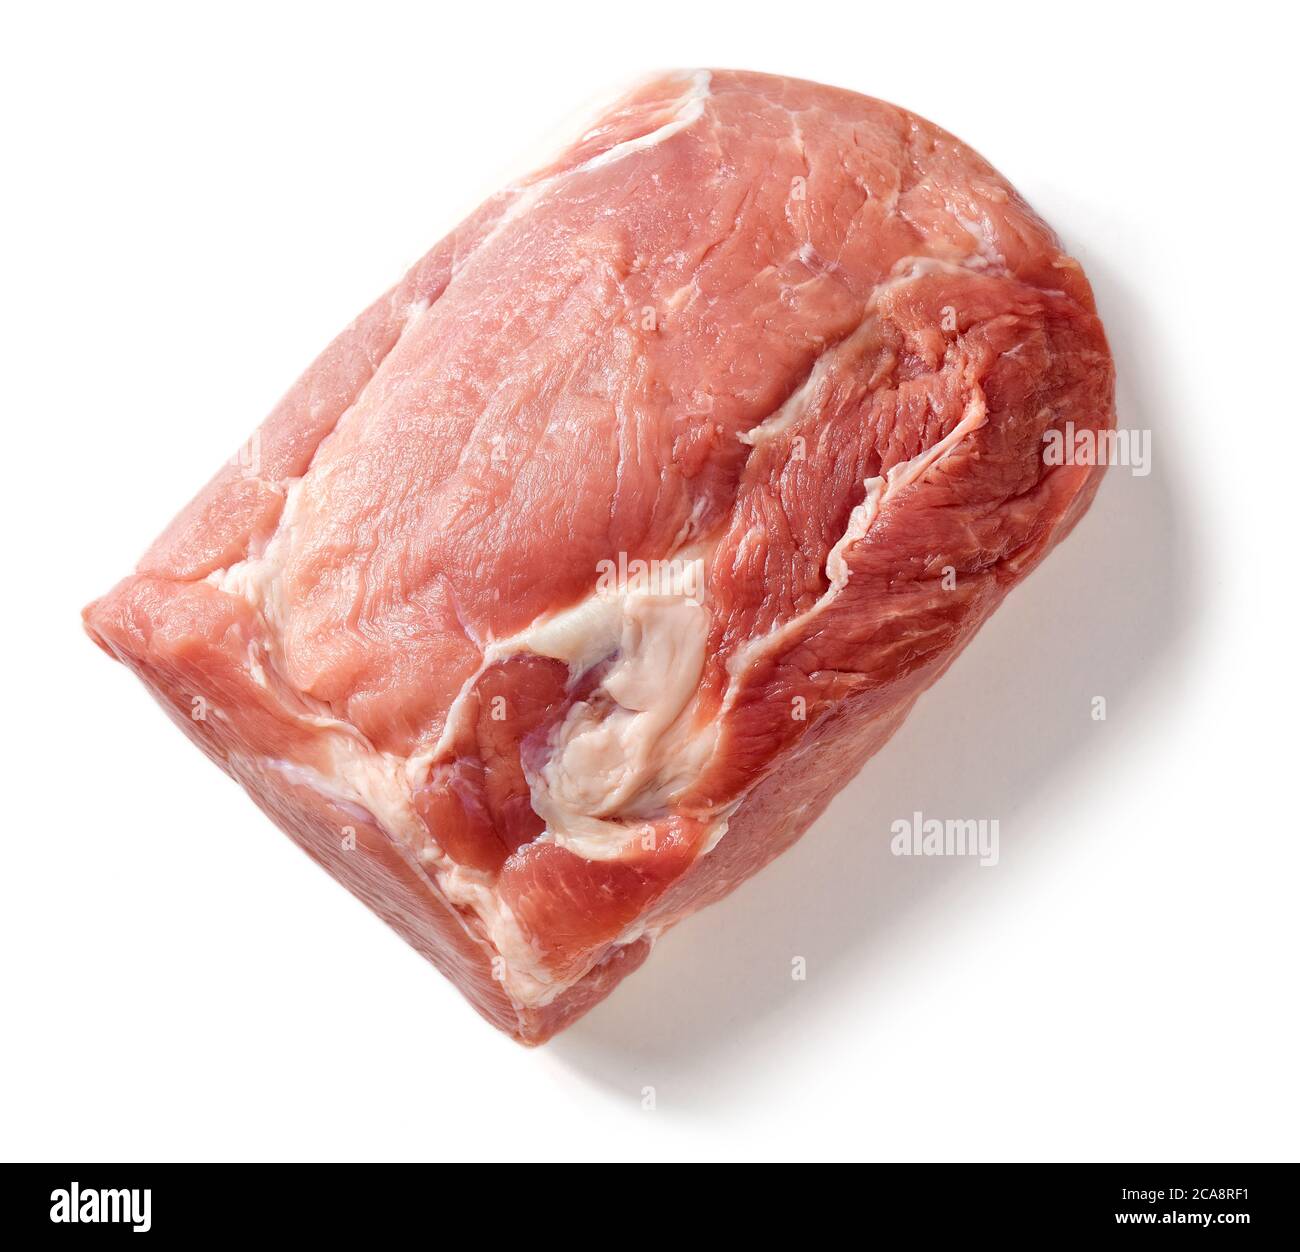 Carne di maiale fresca cruda isolata in bianco, vista dall'alto Foto Stock